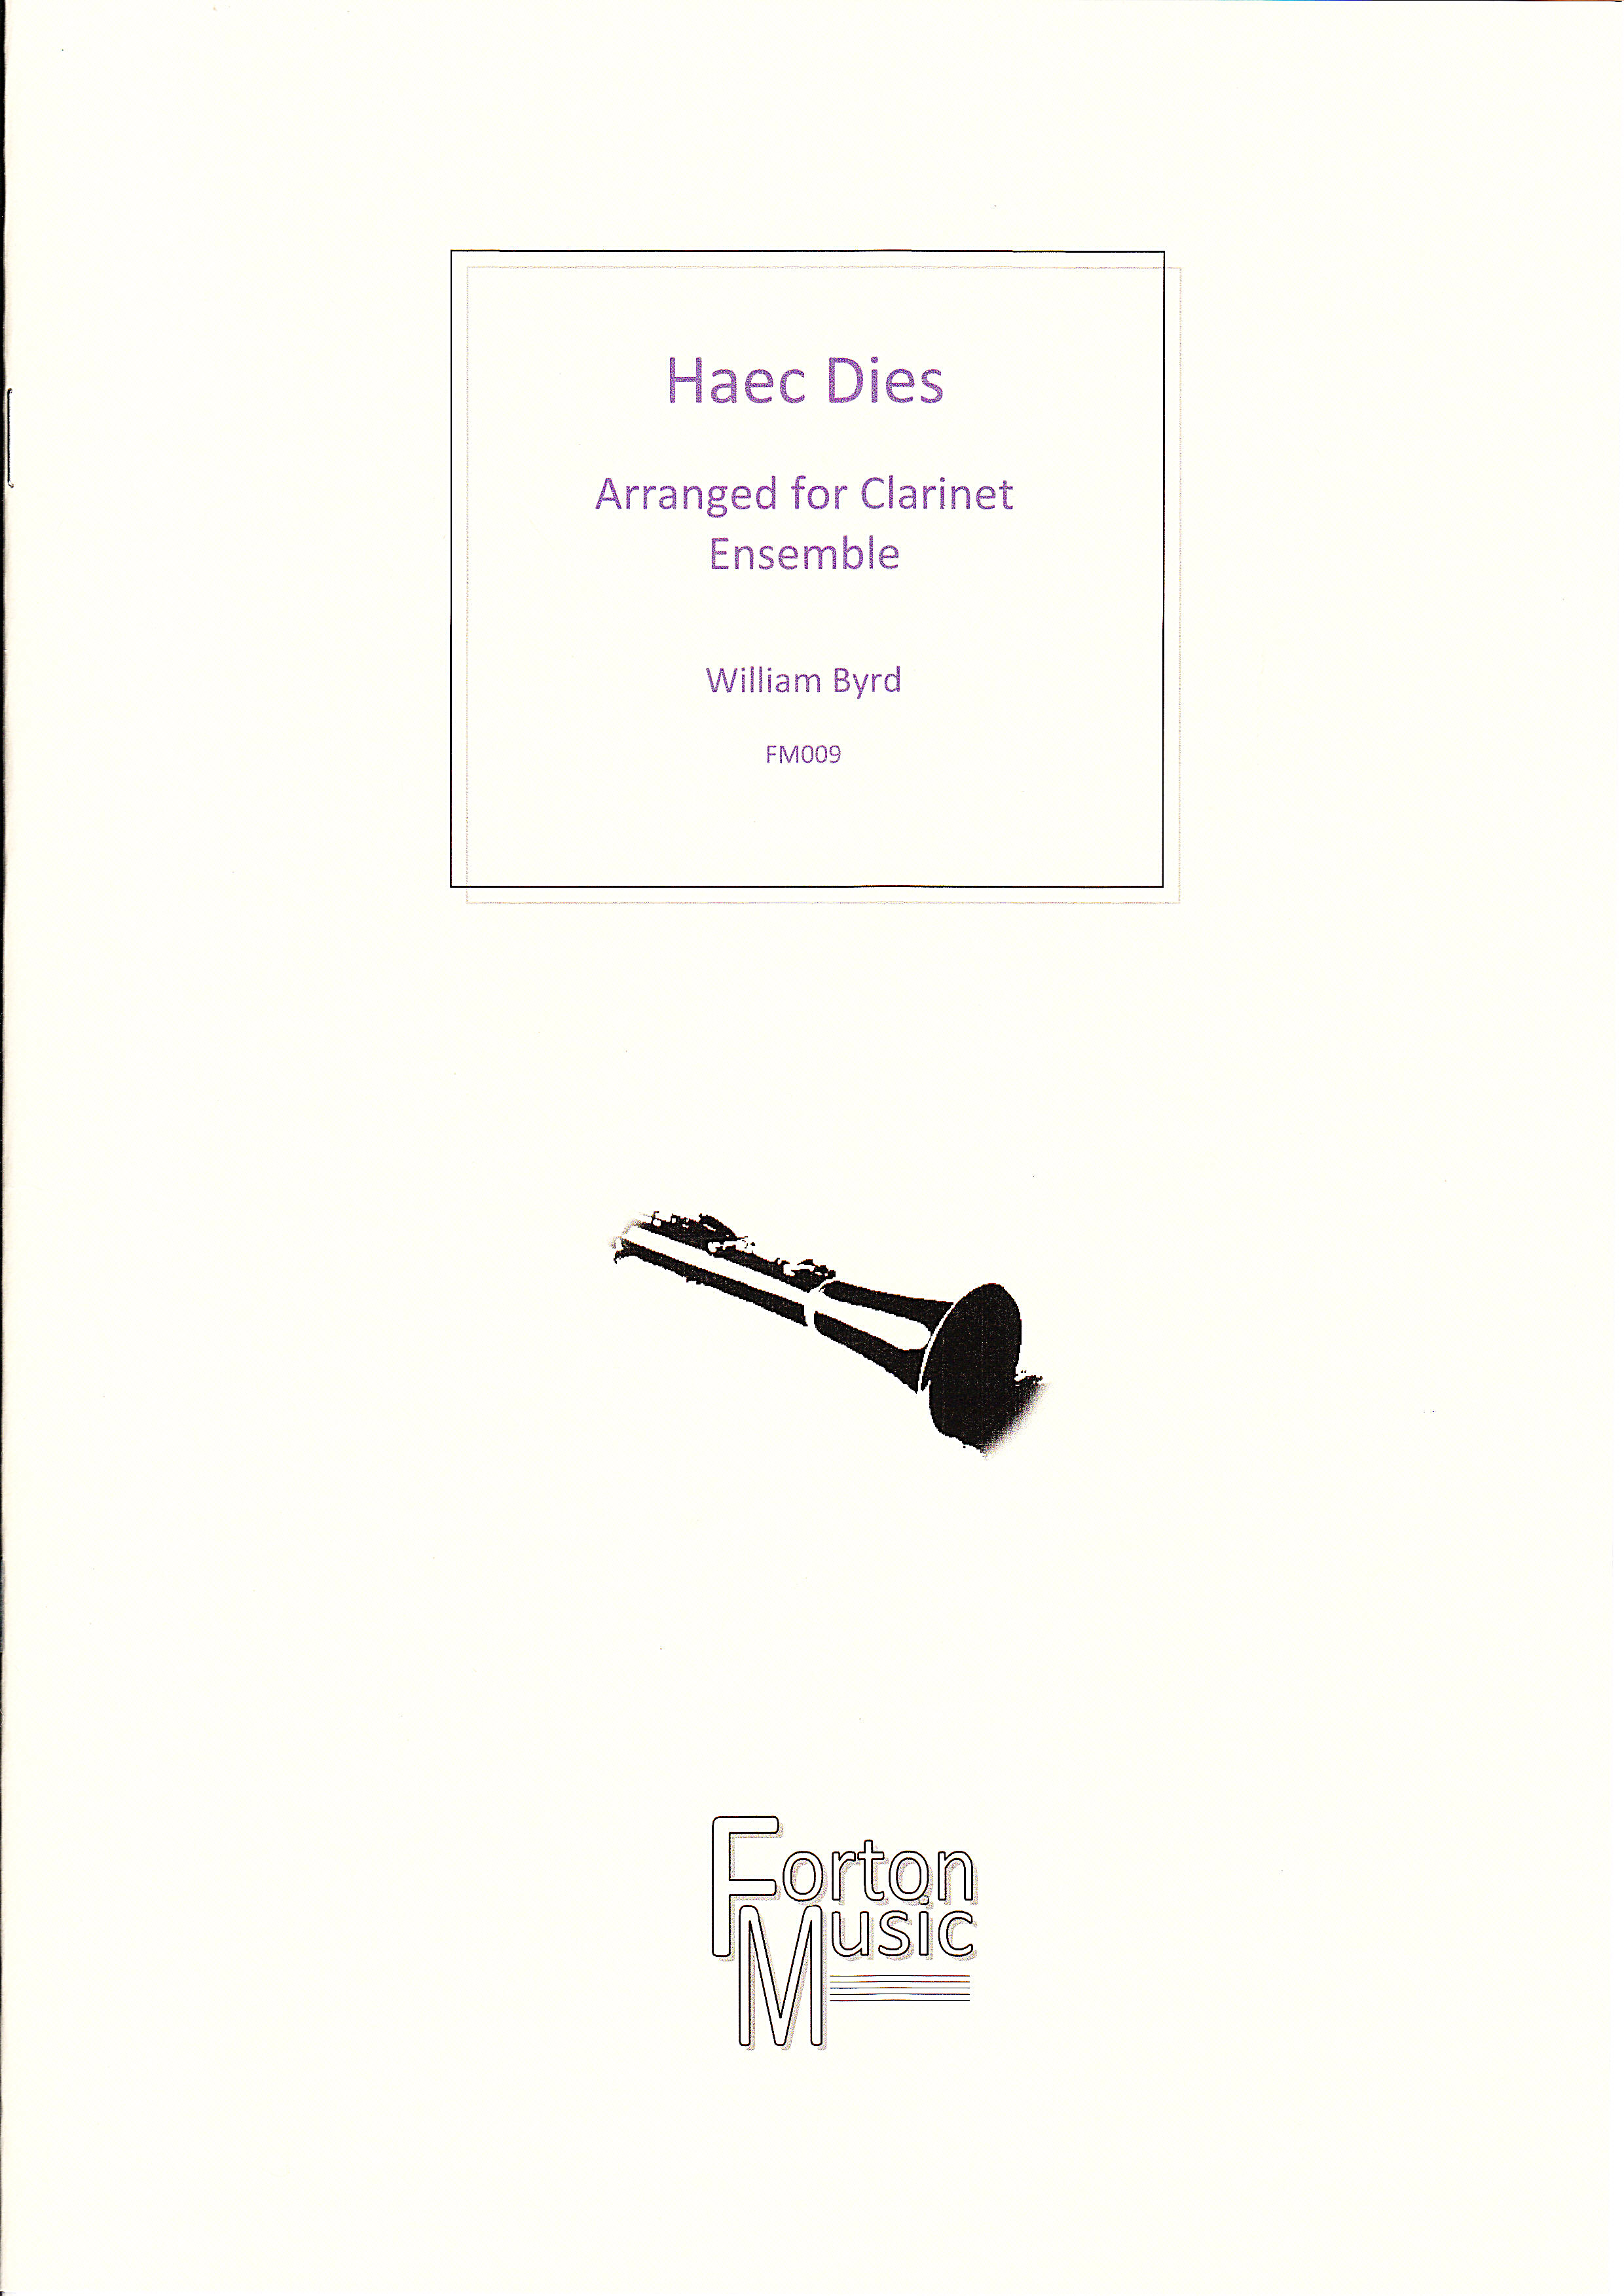 HAEC DIES score & parts